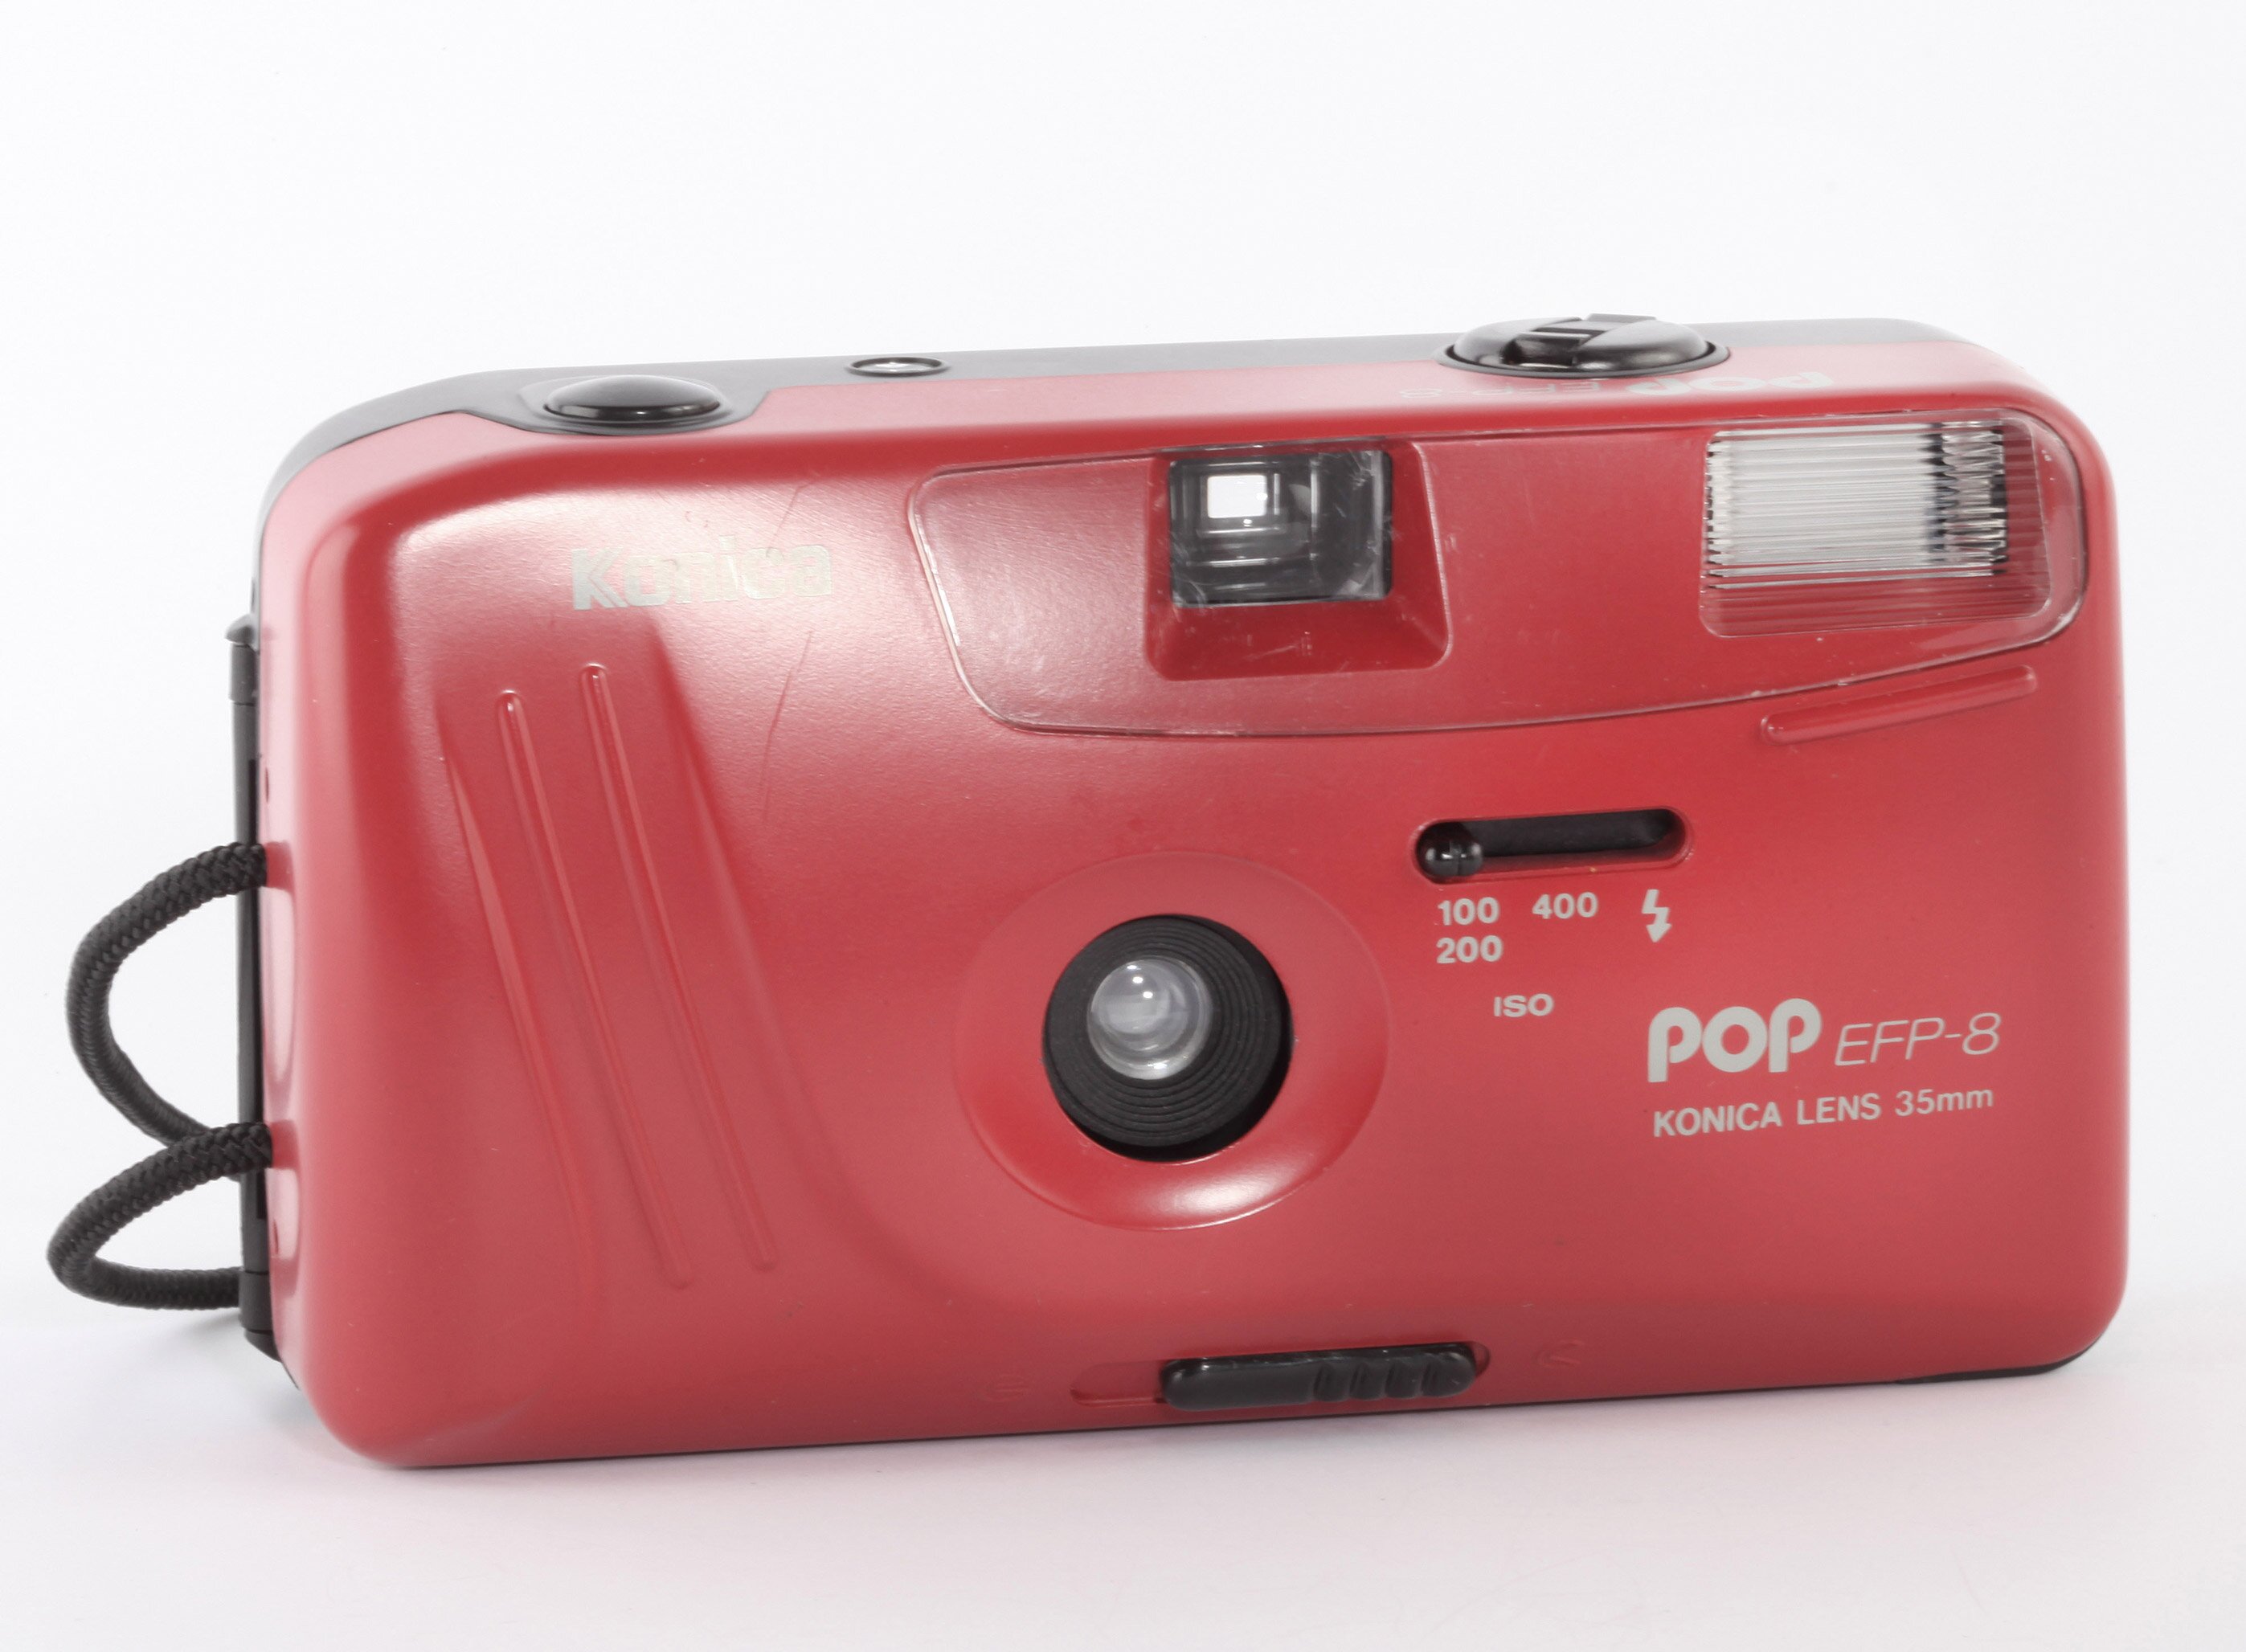 Konica POP EFP-8 Analoge Kompaktkamera